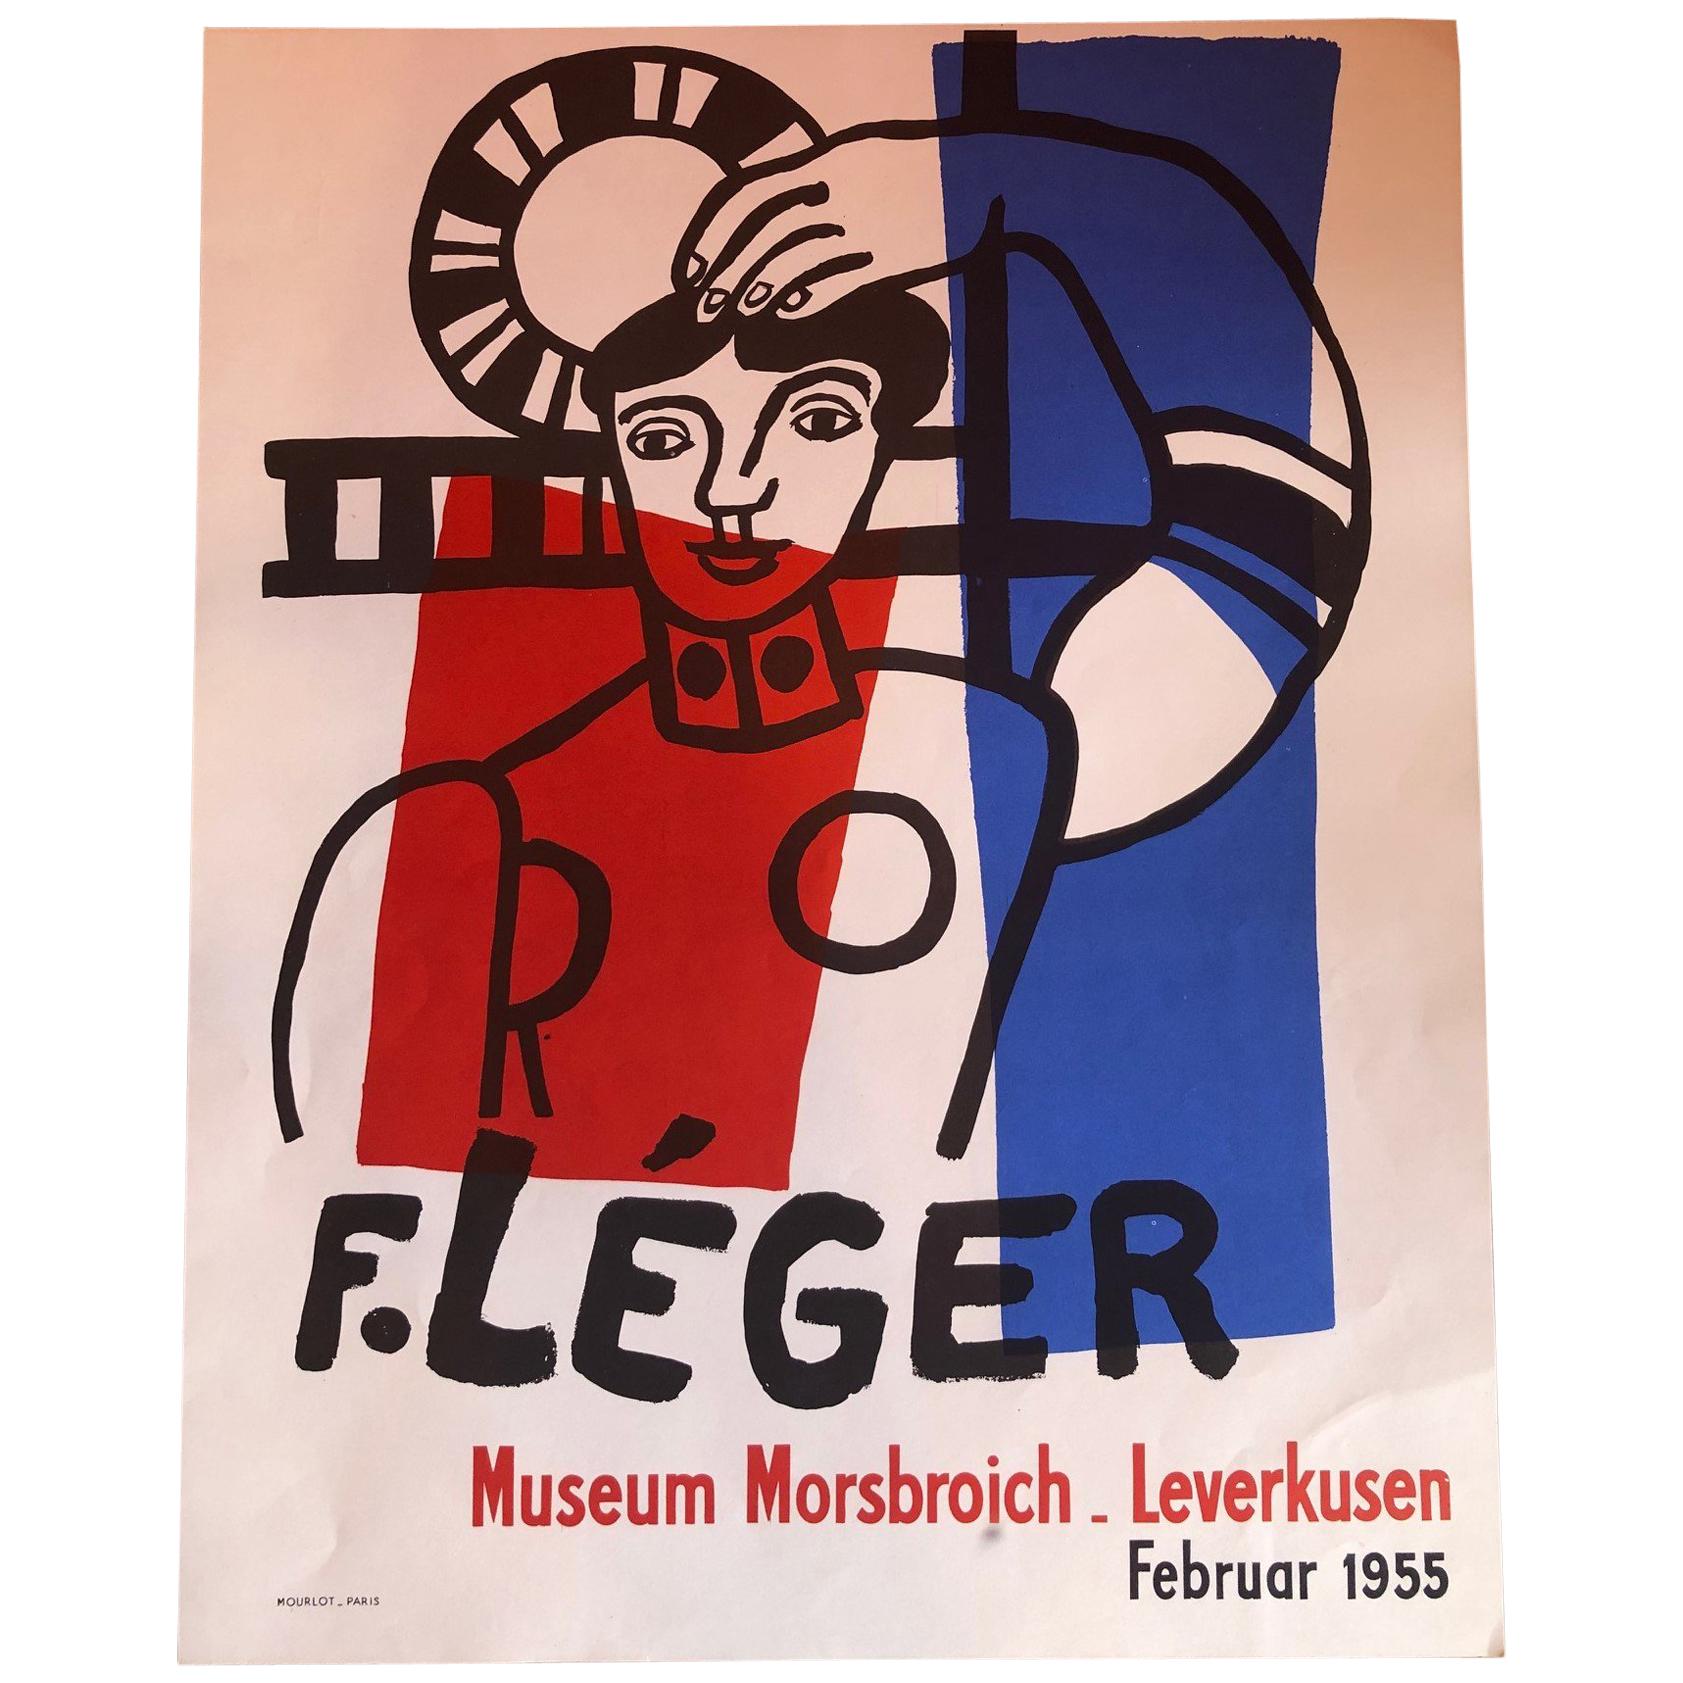 Midcentury Fernand Léger Museum Morsbroich Lithograph Art Poster, 1955